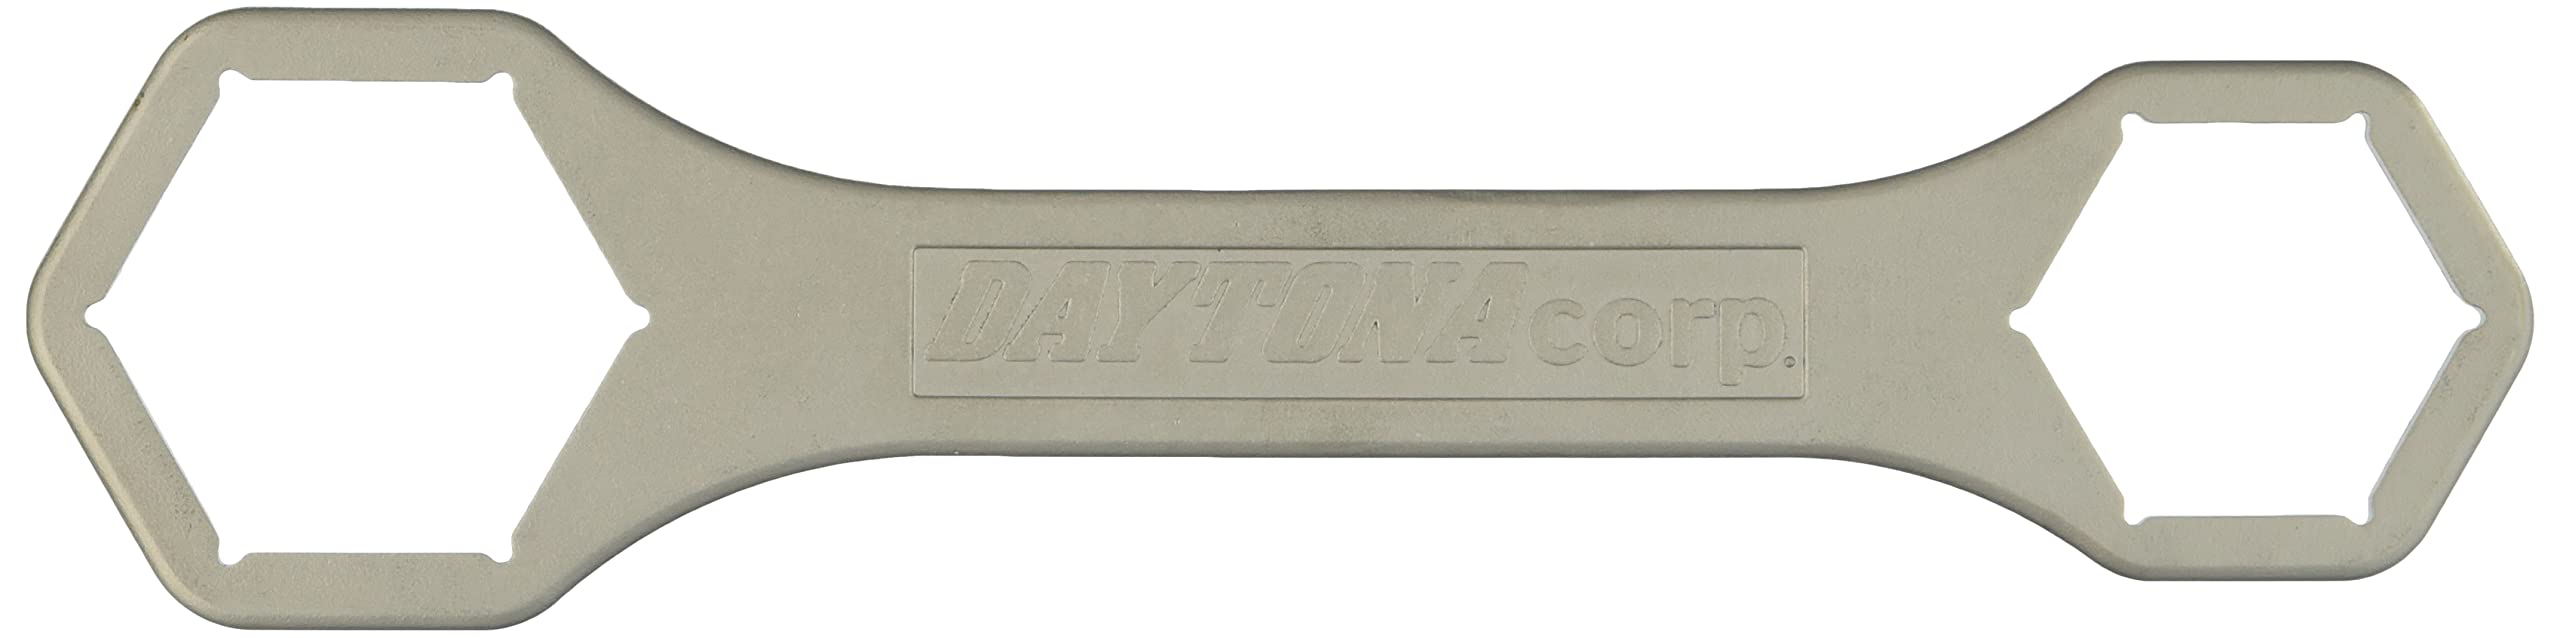 デイトナ(Daytona) バイク用 クラッチナットレンチ 41mm/34mm 93597